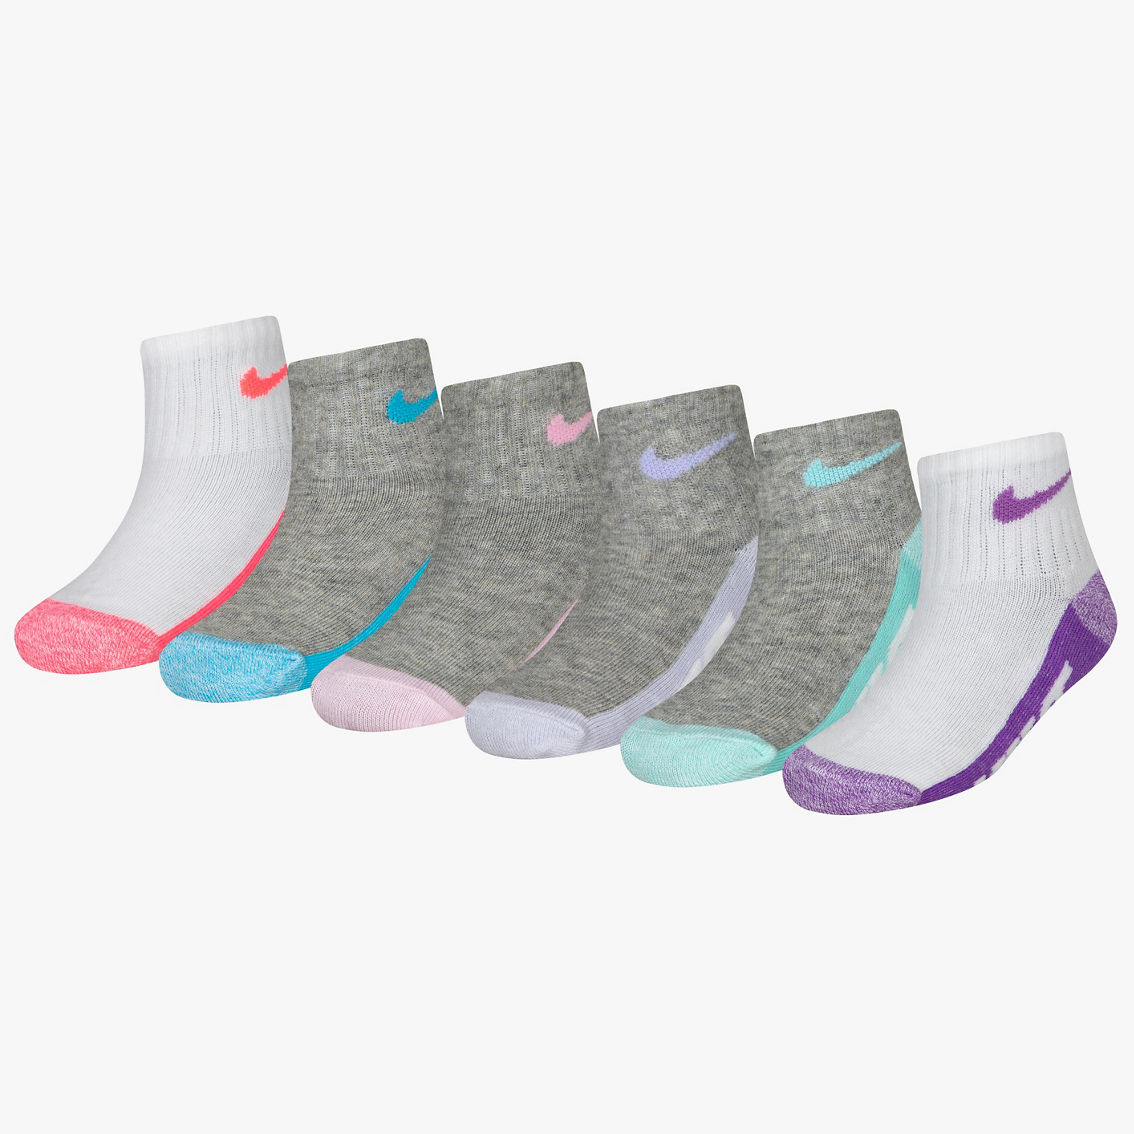 Nike Infant Girls Logo Socks 6 Pk. | Baby Girl 0-24 Months | Clothing ...